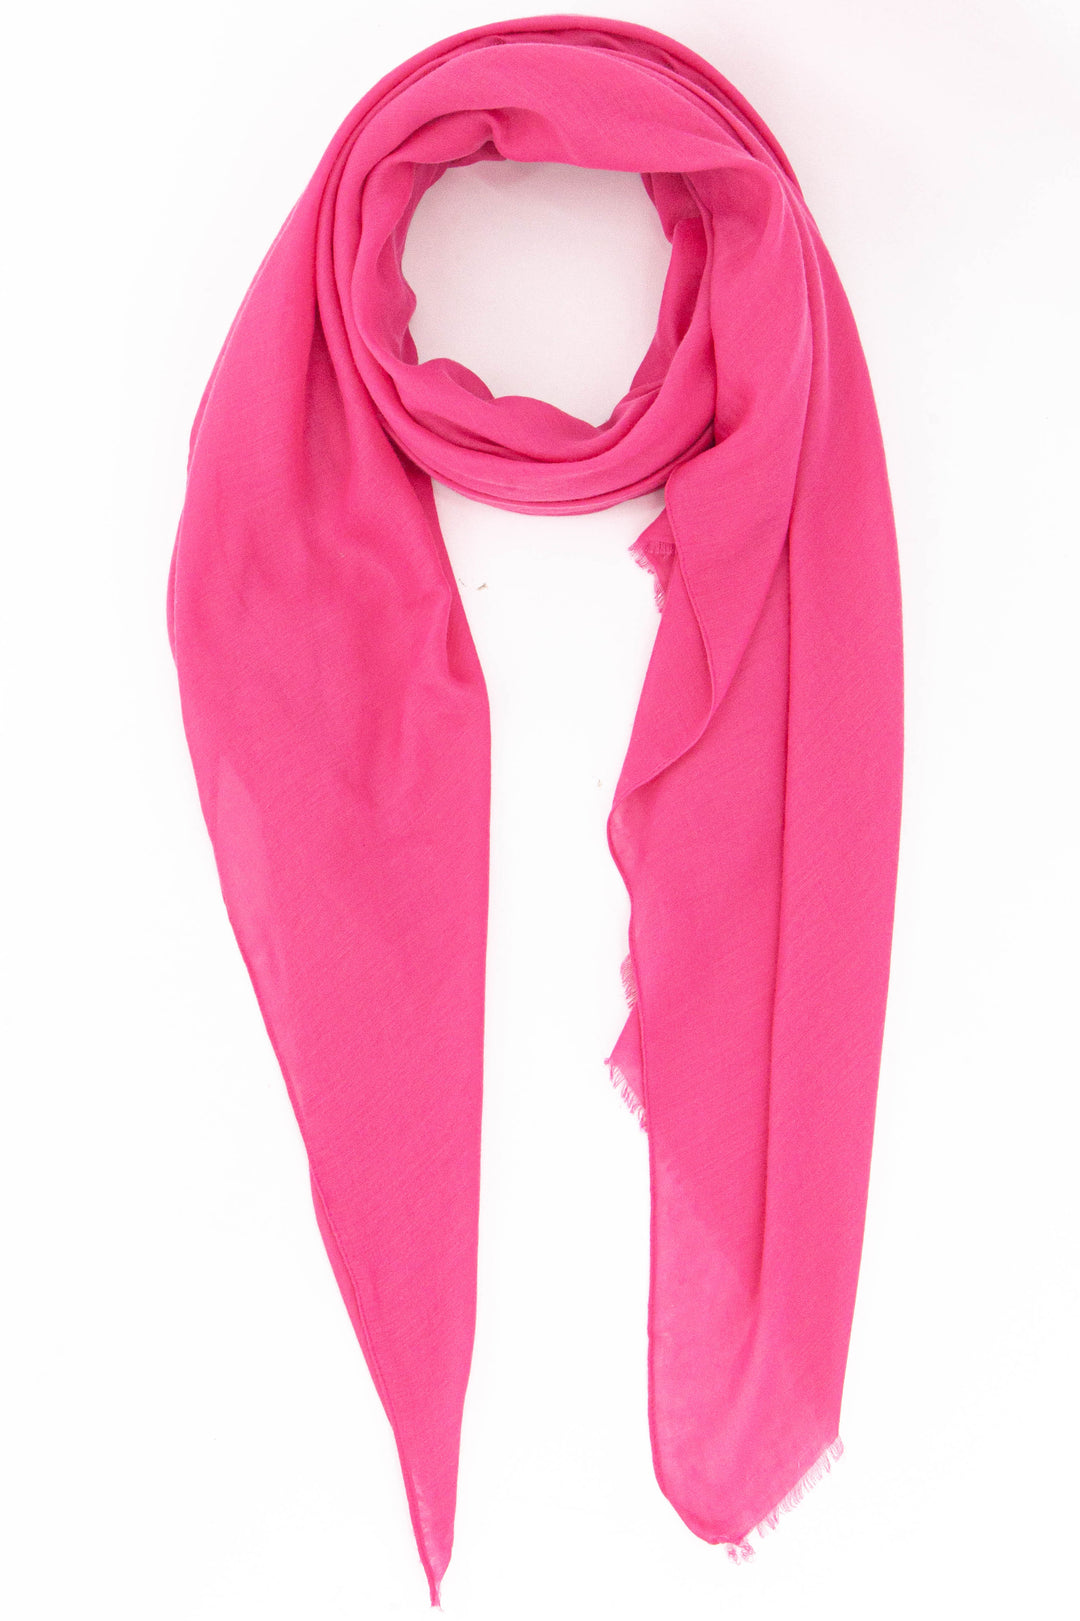 plain pink lightweight scarf